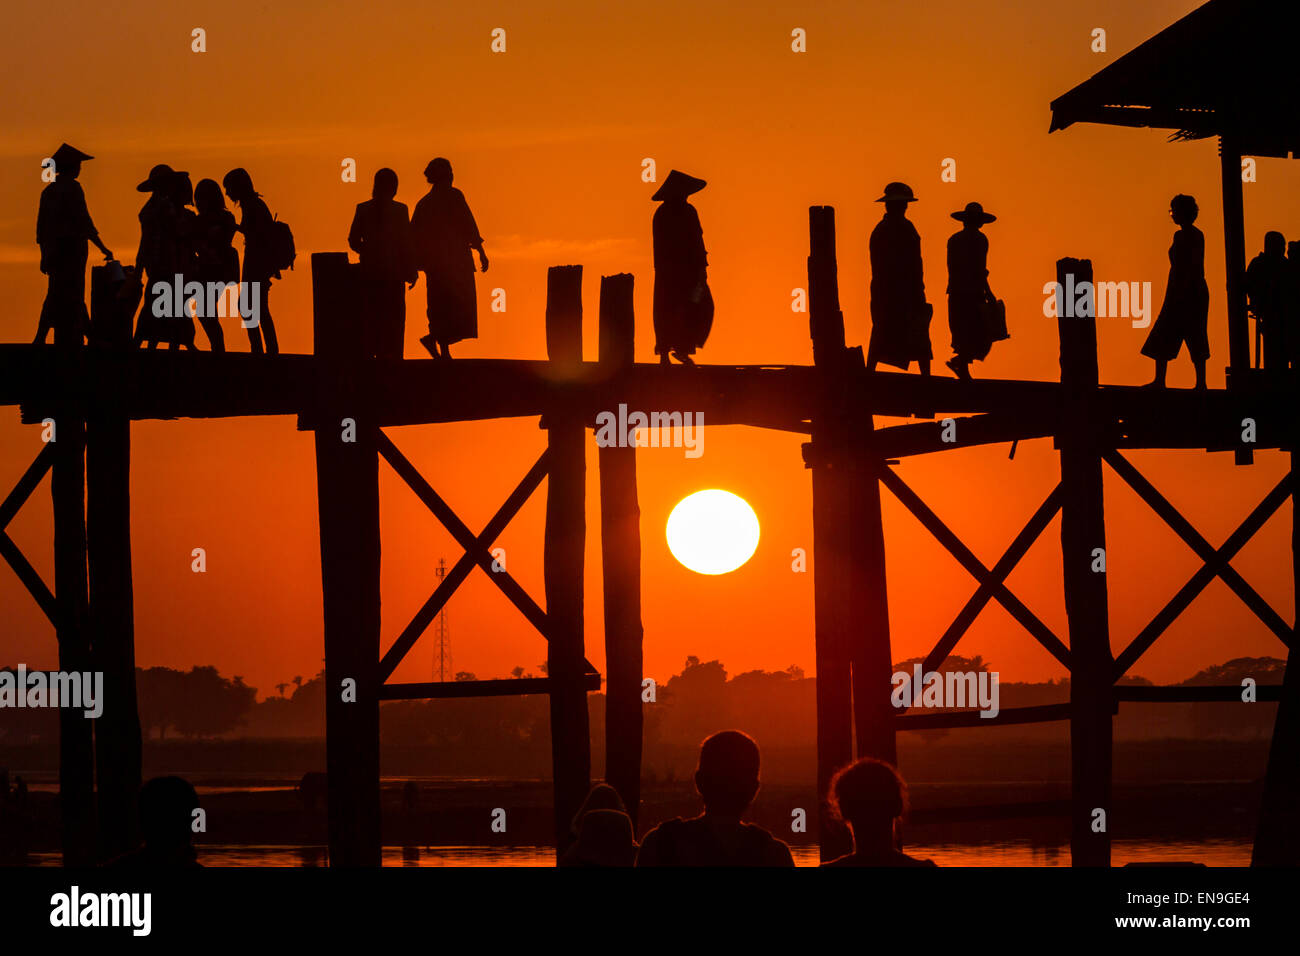 Le persone che attraversano il ponte di legno al tramonto, U- bein bridge, Mandalay Myanmar. Foto Stock